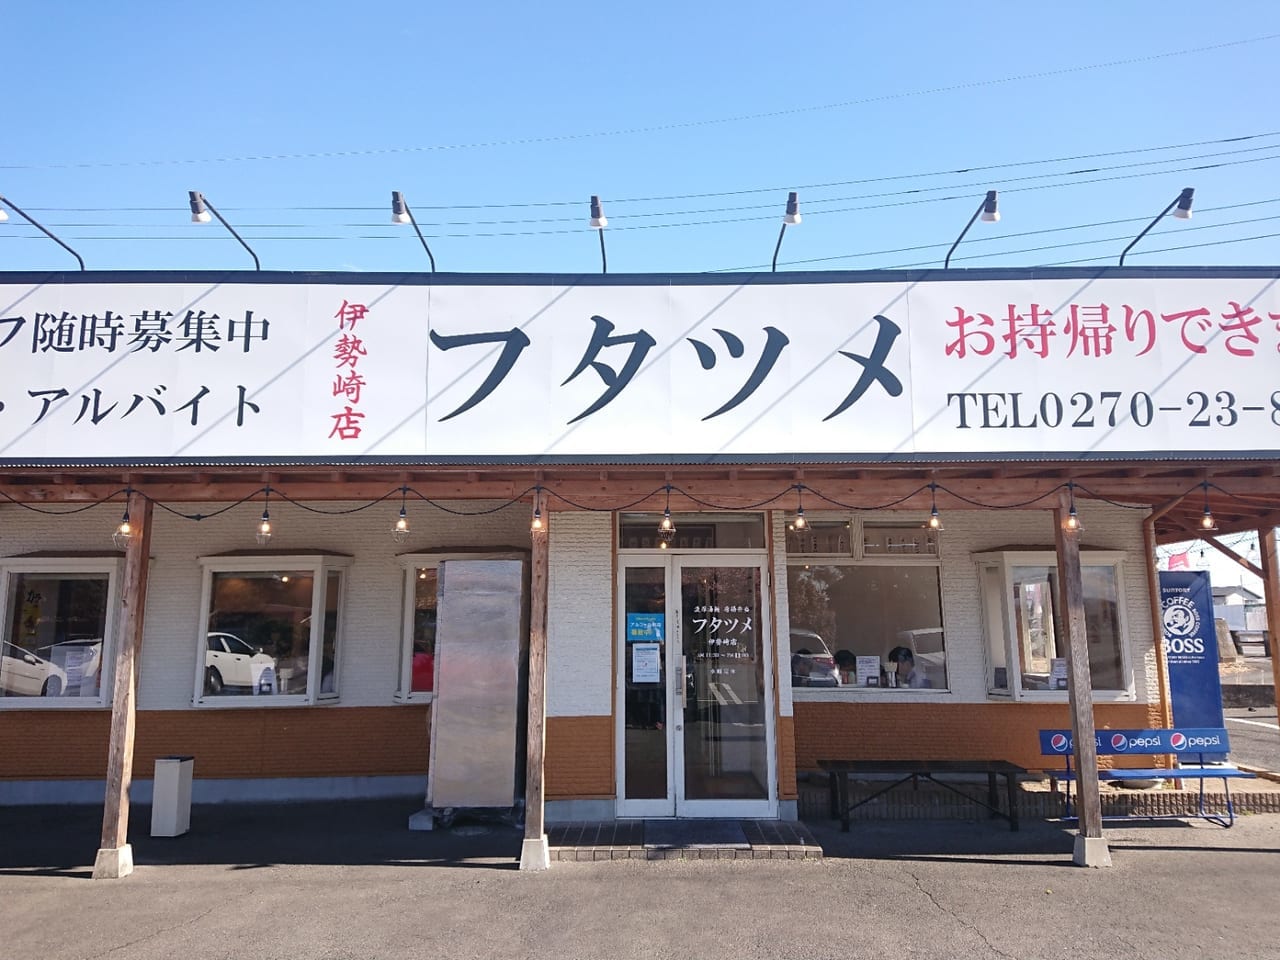 伊勢崎市のラーメン店「フタツメ」のタンメンが美味しい